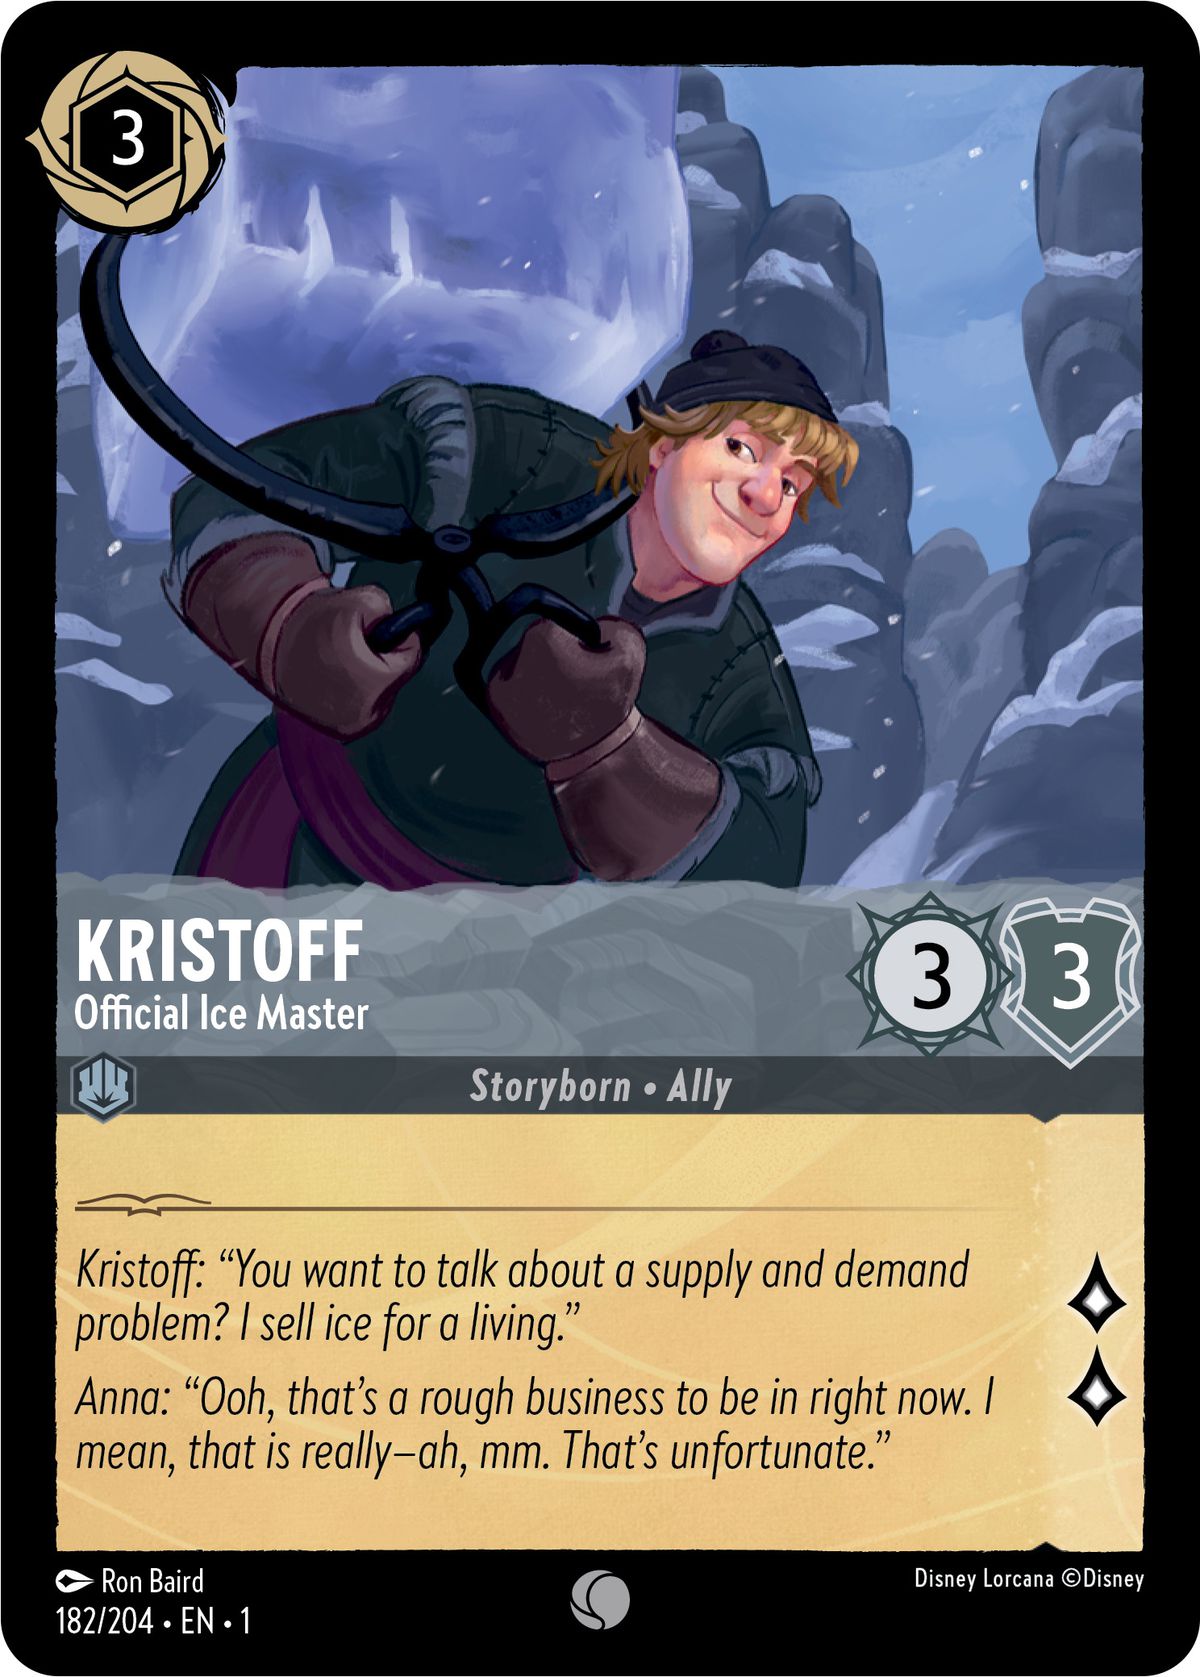 Kristoff, maestro di ghiaccio ufficiale, è un barlume 3/3 - un alleato nato dalla storia - che può essere giocato al tavolo per 3 inchiostro.  Genera due tradizioni durante la ricerca.